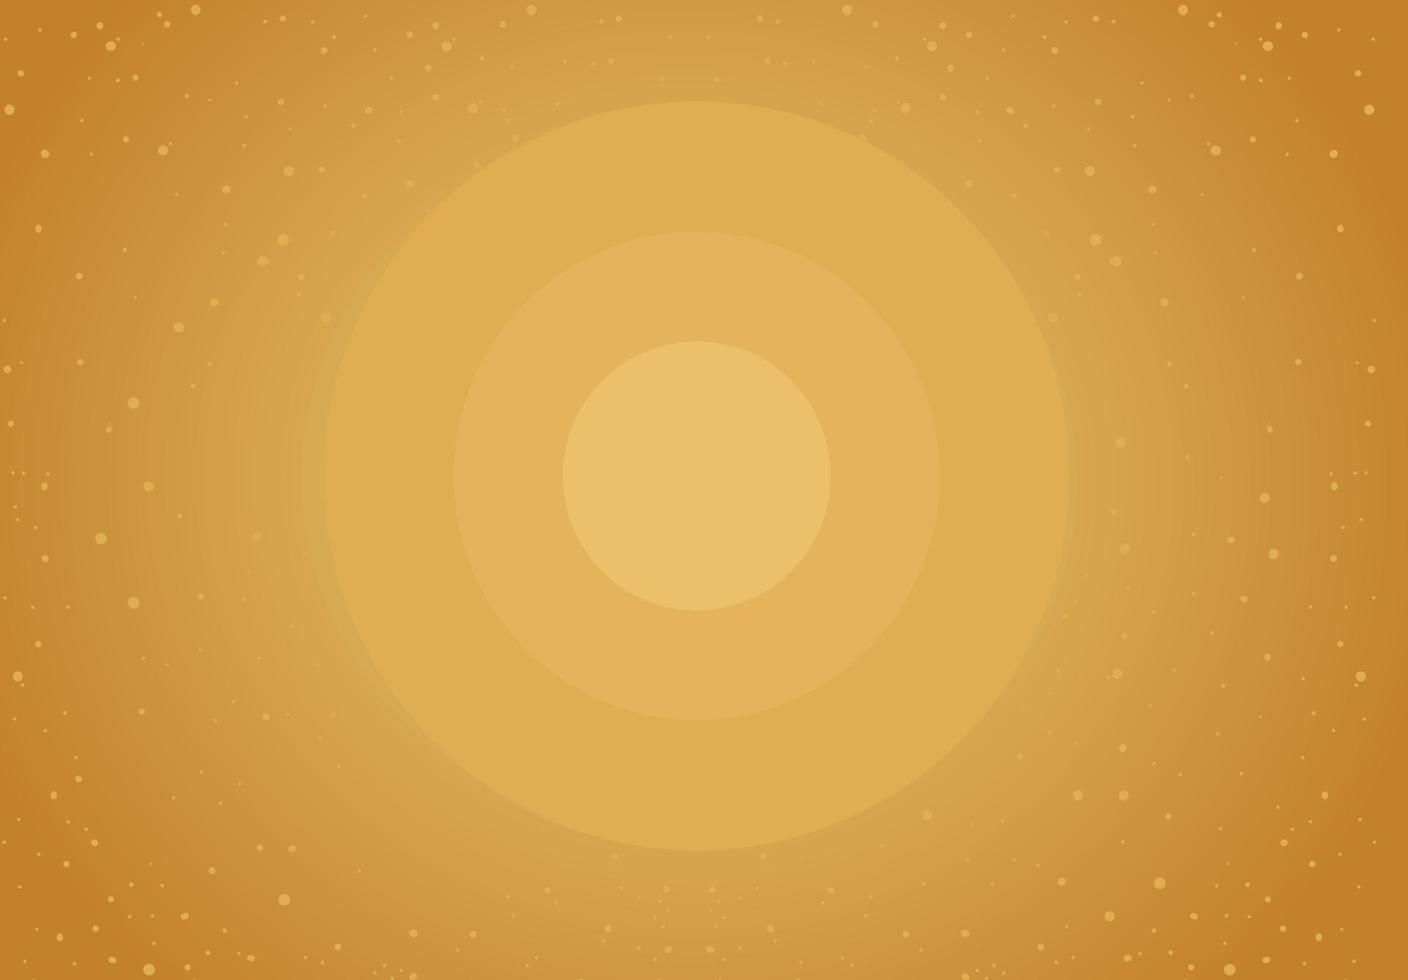 abstrato marrom ou amarelo com círculo brilhante no meio vetor